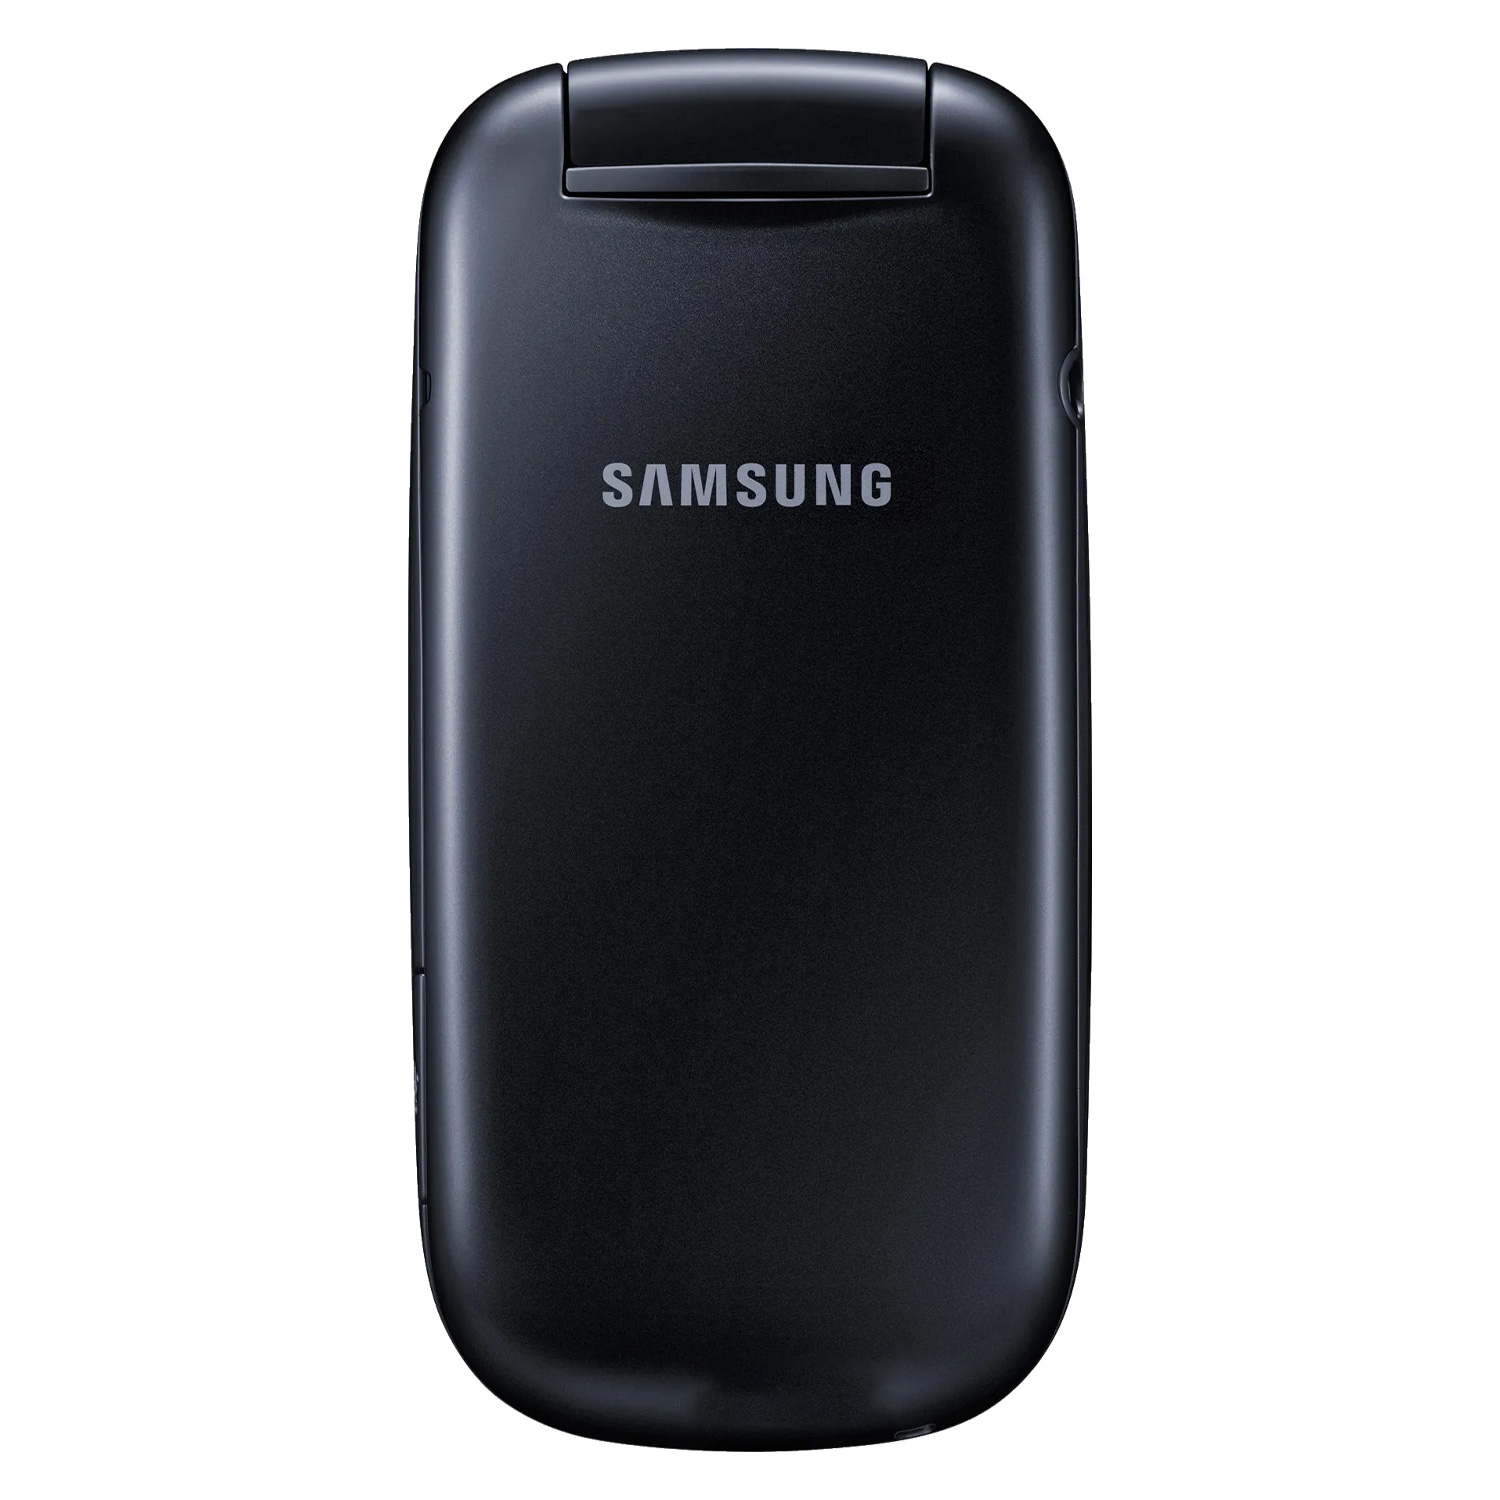 Celular Samsung E1272 Flip Dual SIM Tela 1.77" - Preto